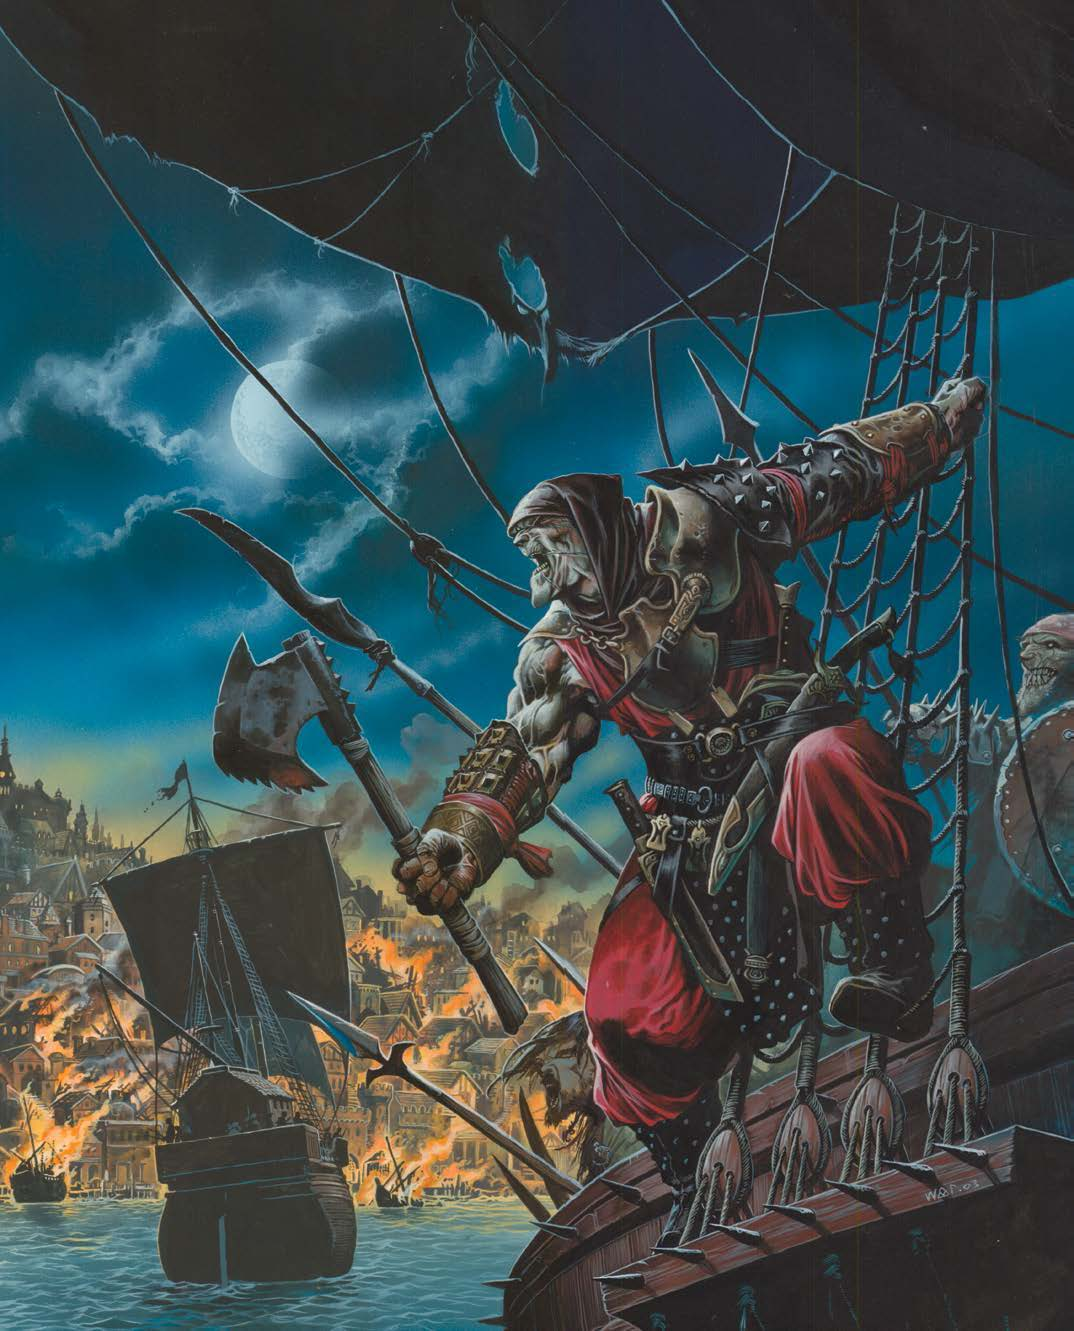 野蛮人的入侵只是这座冒险之城最近一次面临的威胁。尽管许多人丧生，许多财产被破坏，但自由港还是取得了最终的胜利。